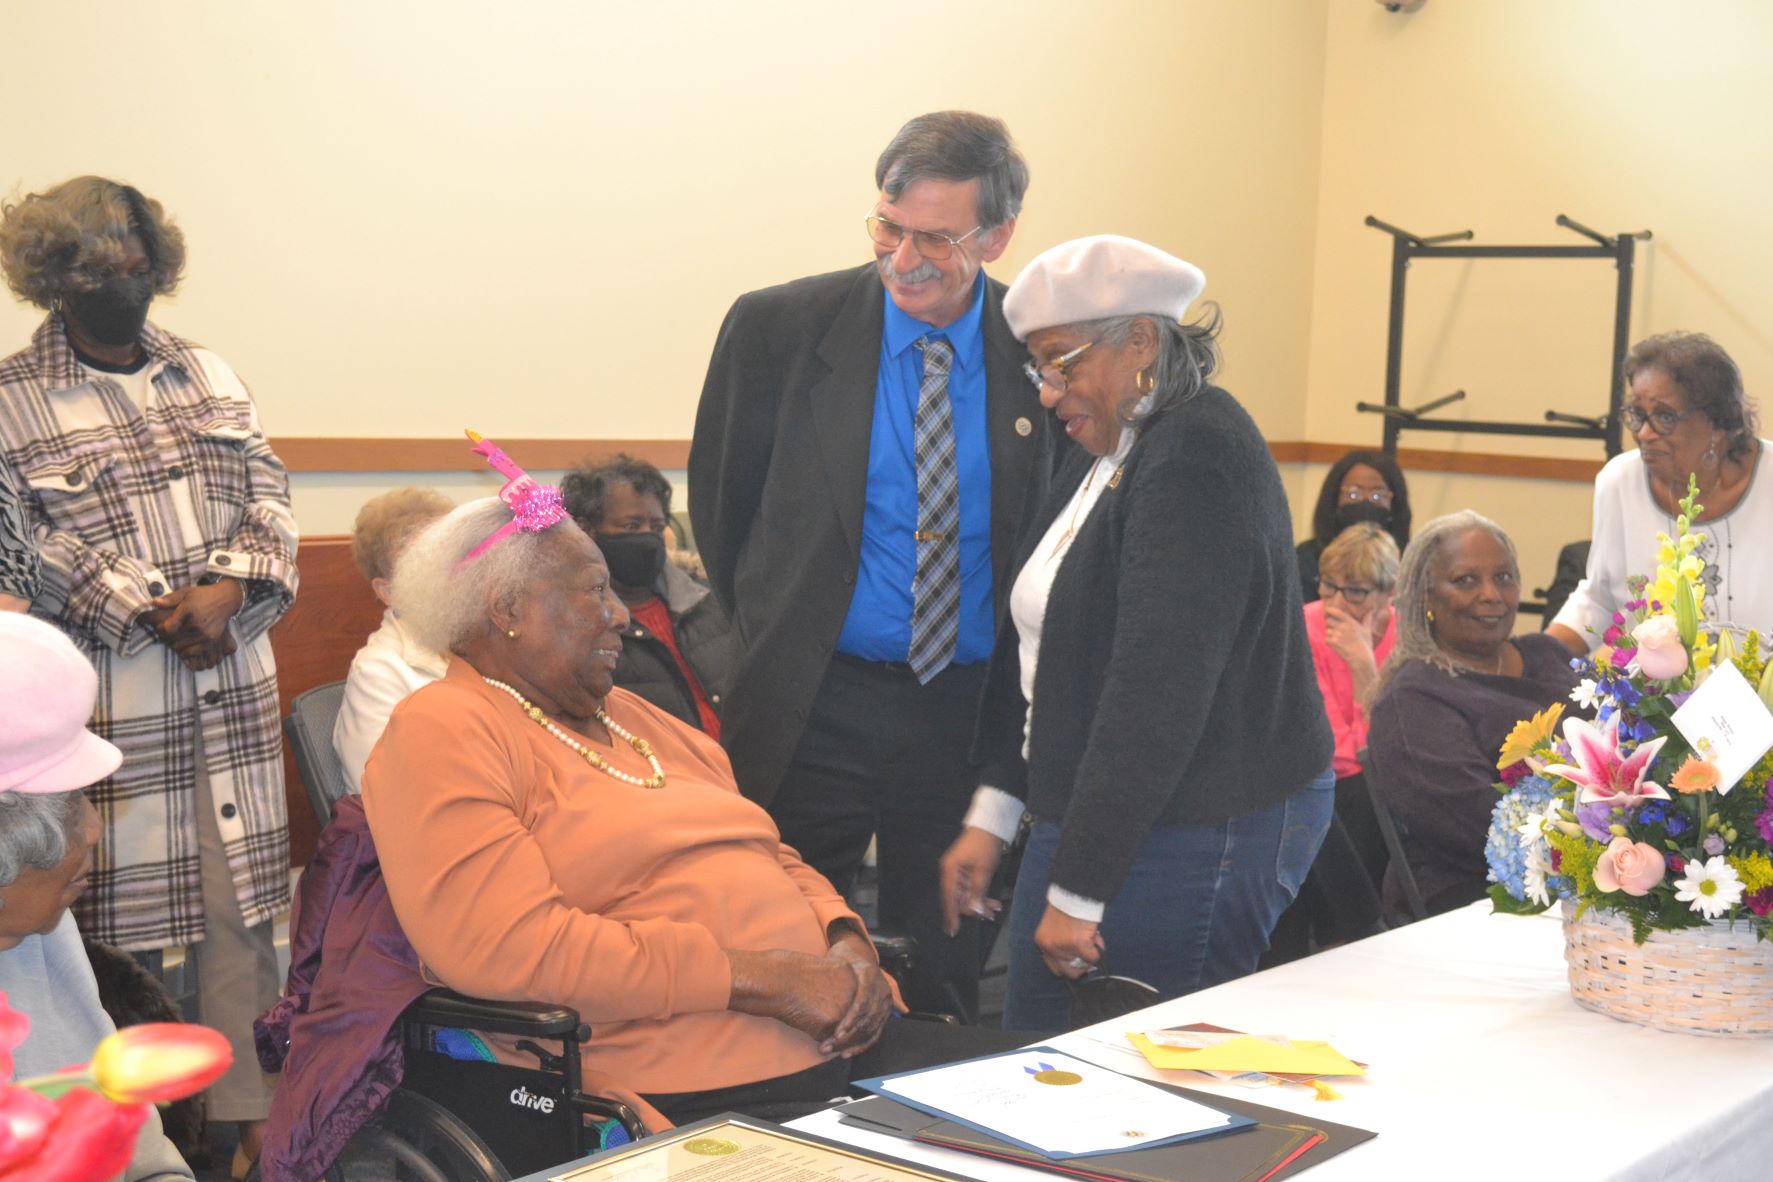 Community celebrates 102nd birthday of retired teacher